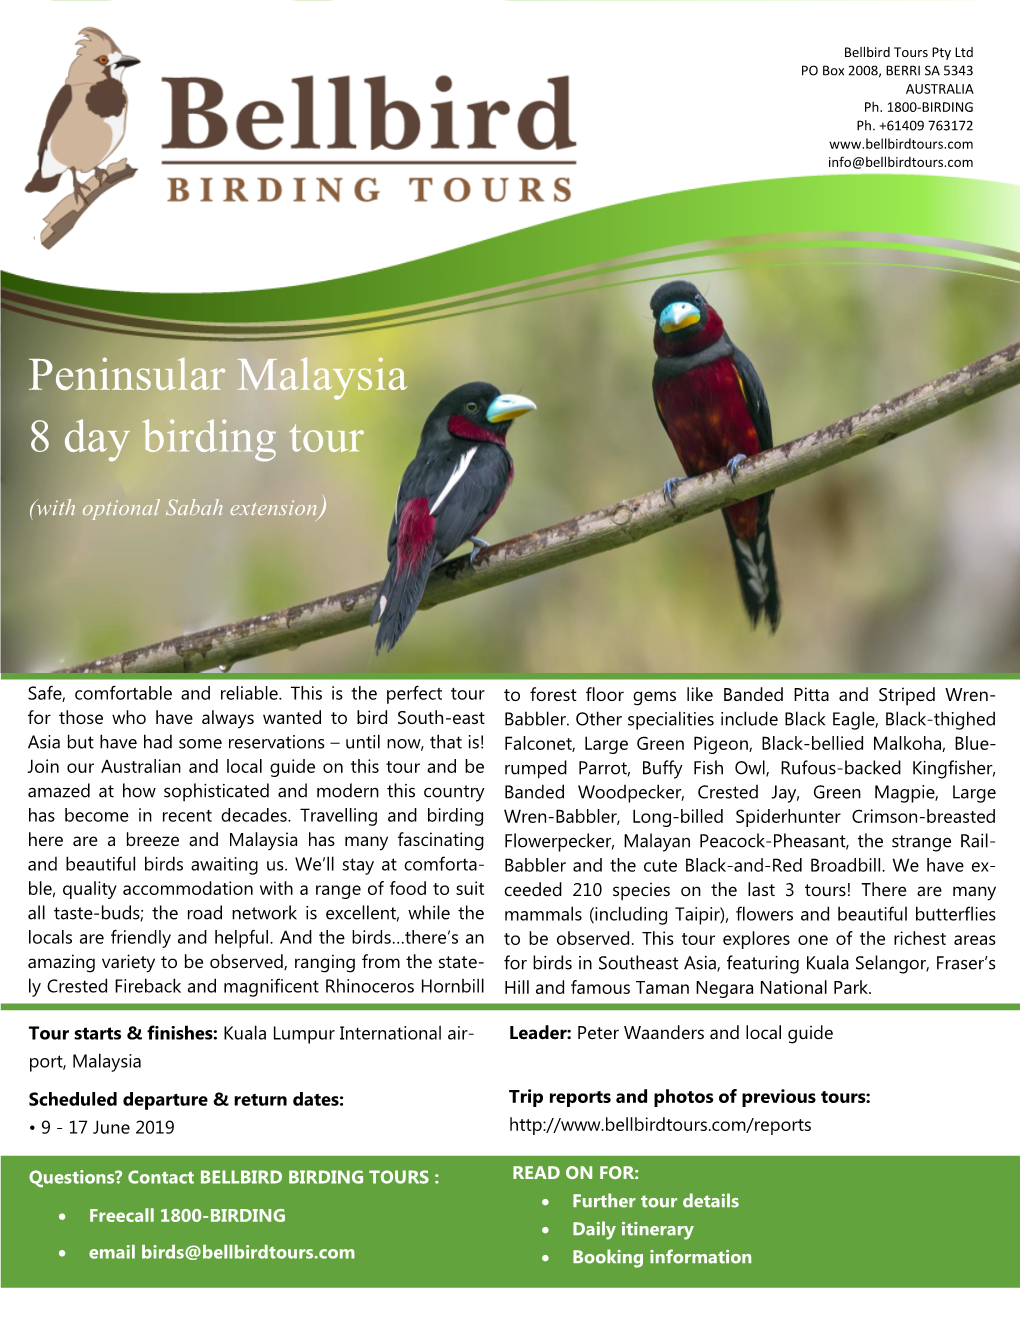 Peninsular Malaysia 8 Day Birding Tour